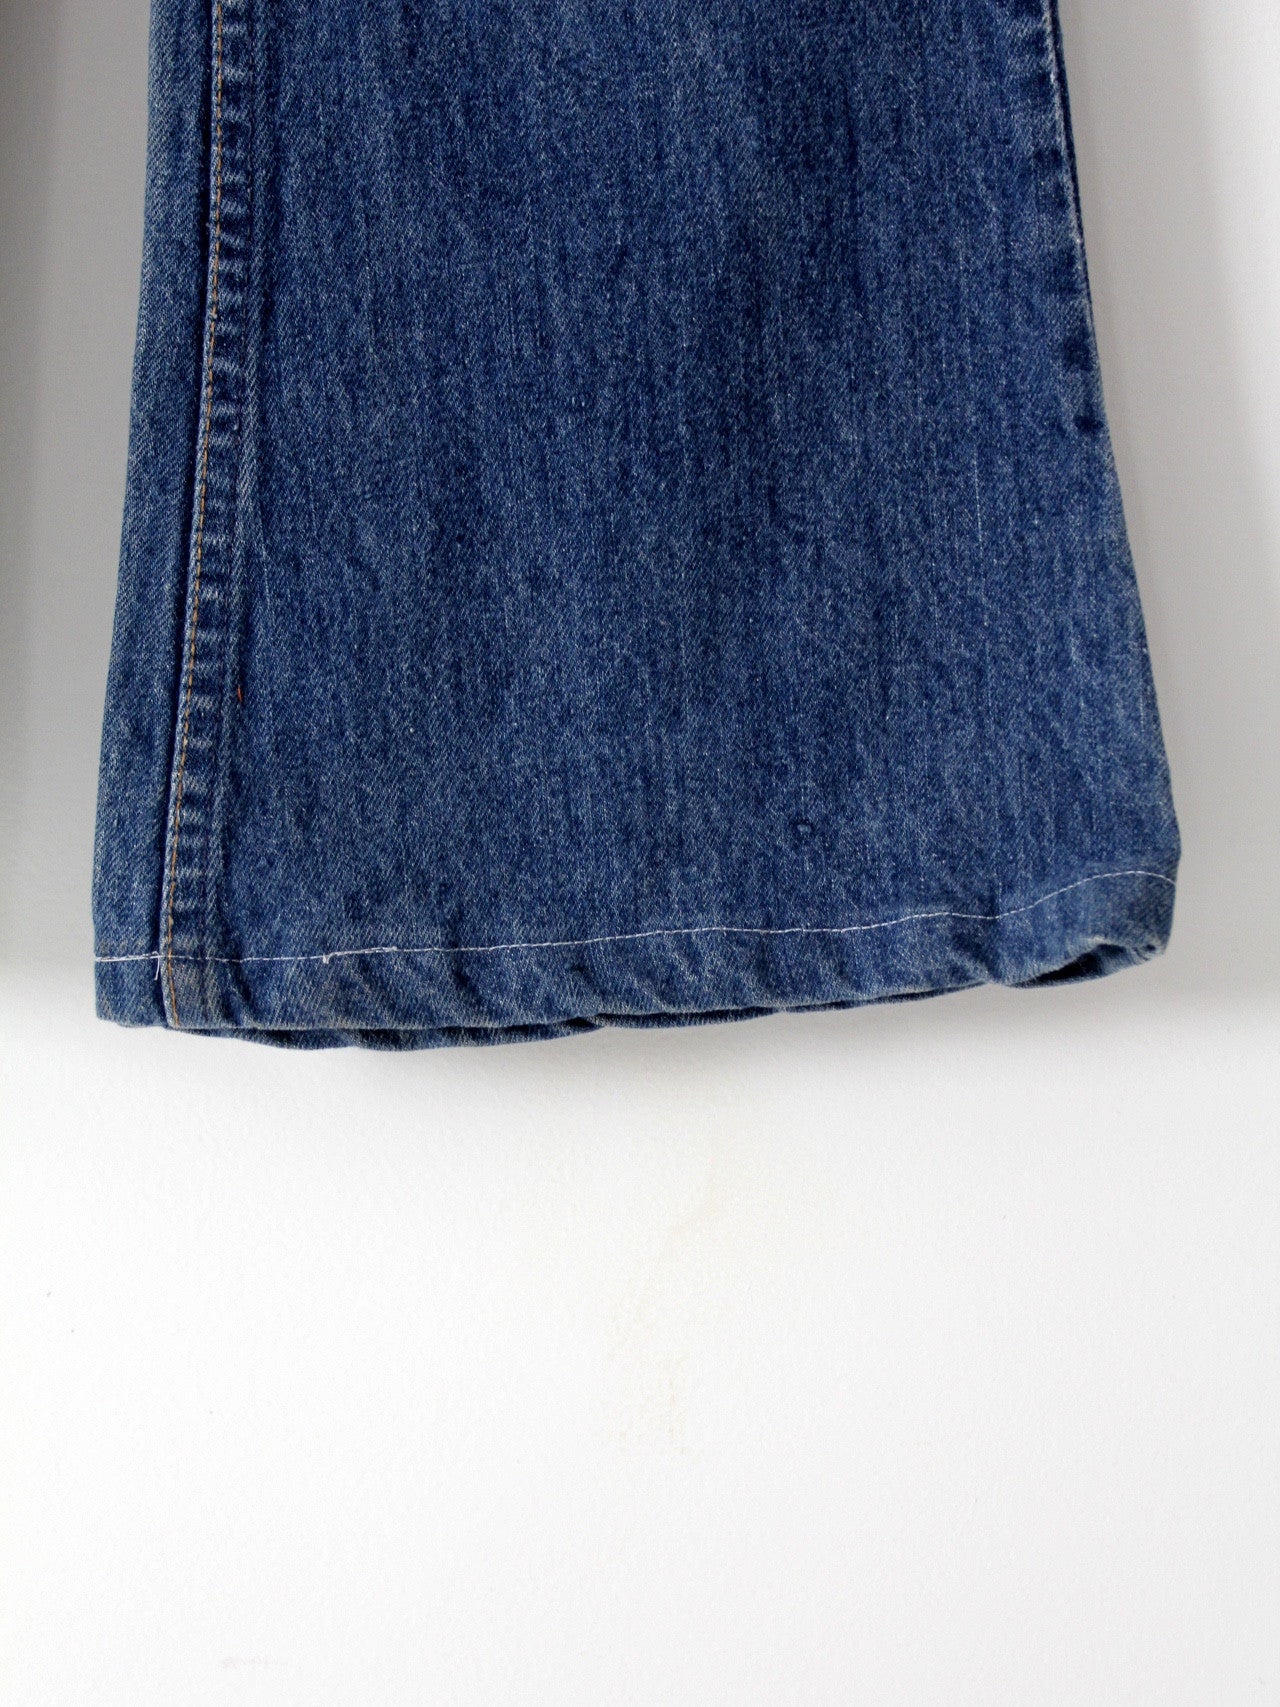 vintage 684 Levis denim jeans, 29 x 29 – 86 Vintage